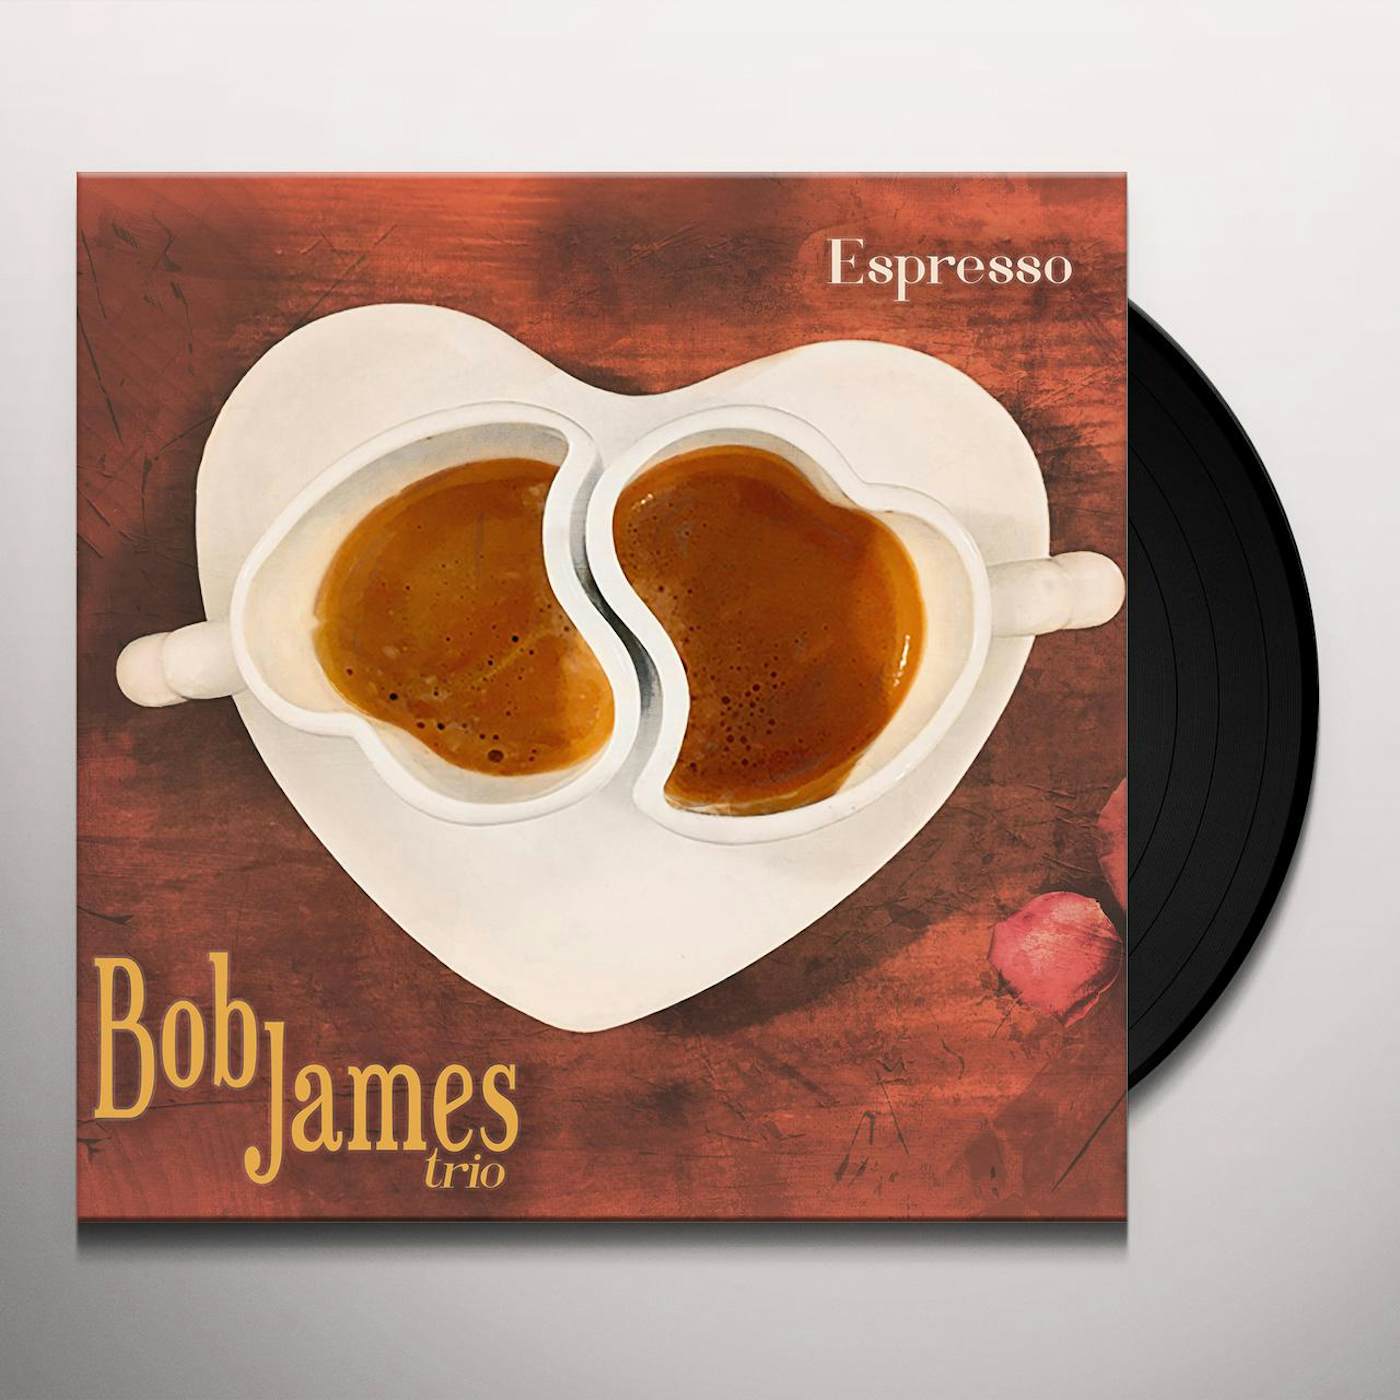 Bob James Espresso Vinyl Record